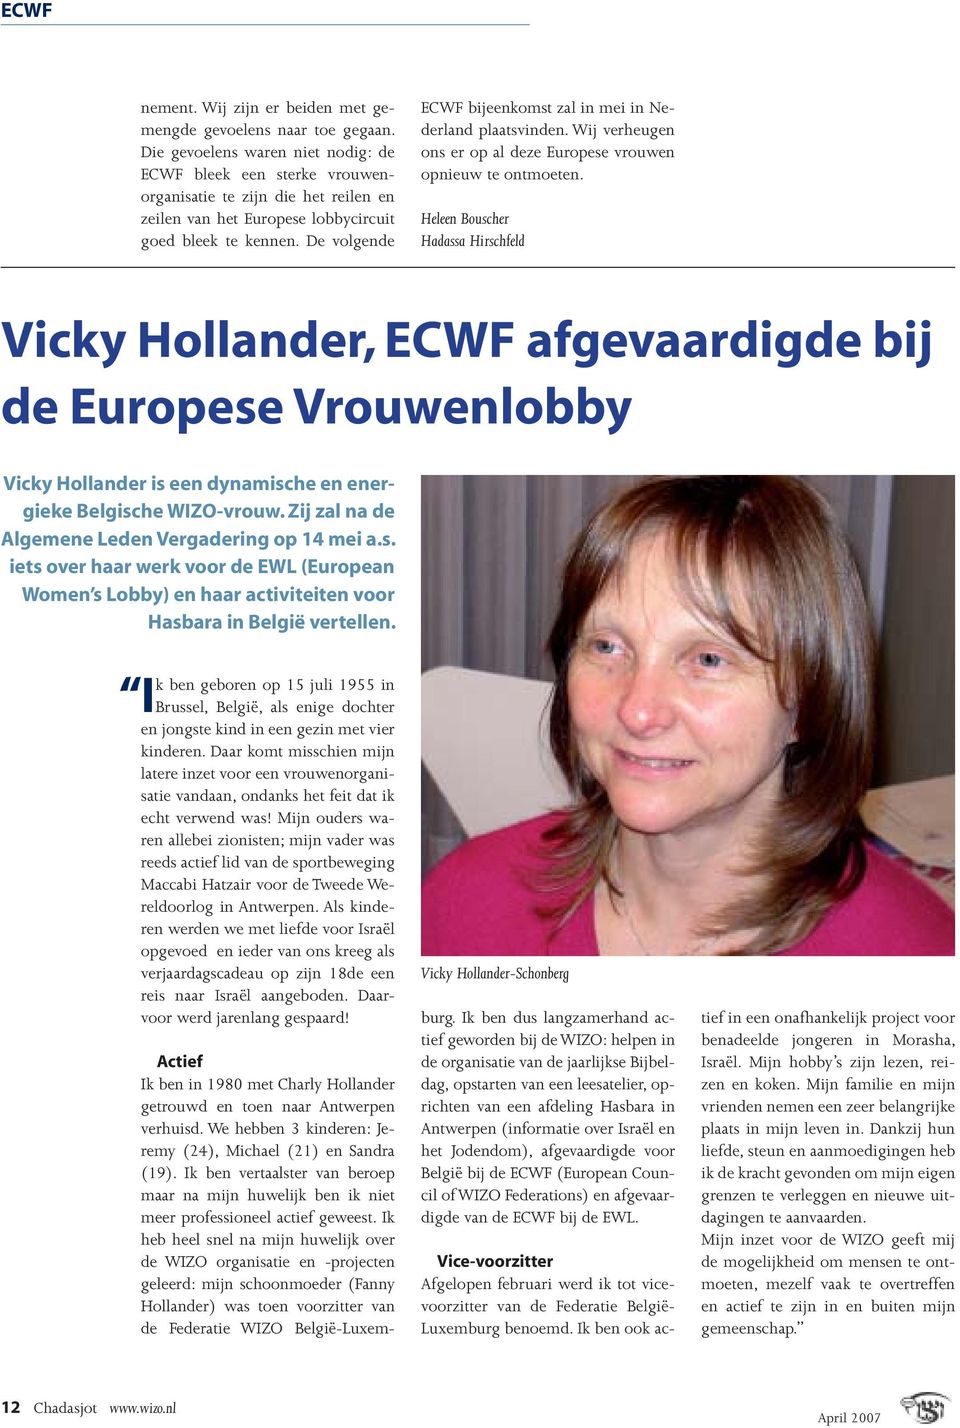 De volgende ECWF bijeenkomst zal in mei in Nederland plaatsvinden. Wij verheugen ons er op al deze Europese vrouwen opnieuw te ontmoeten.